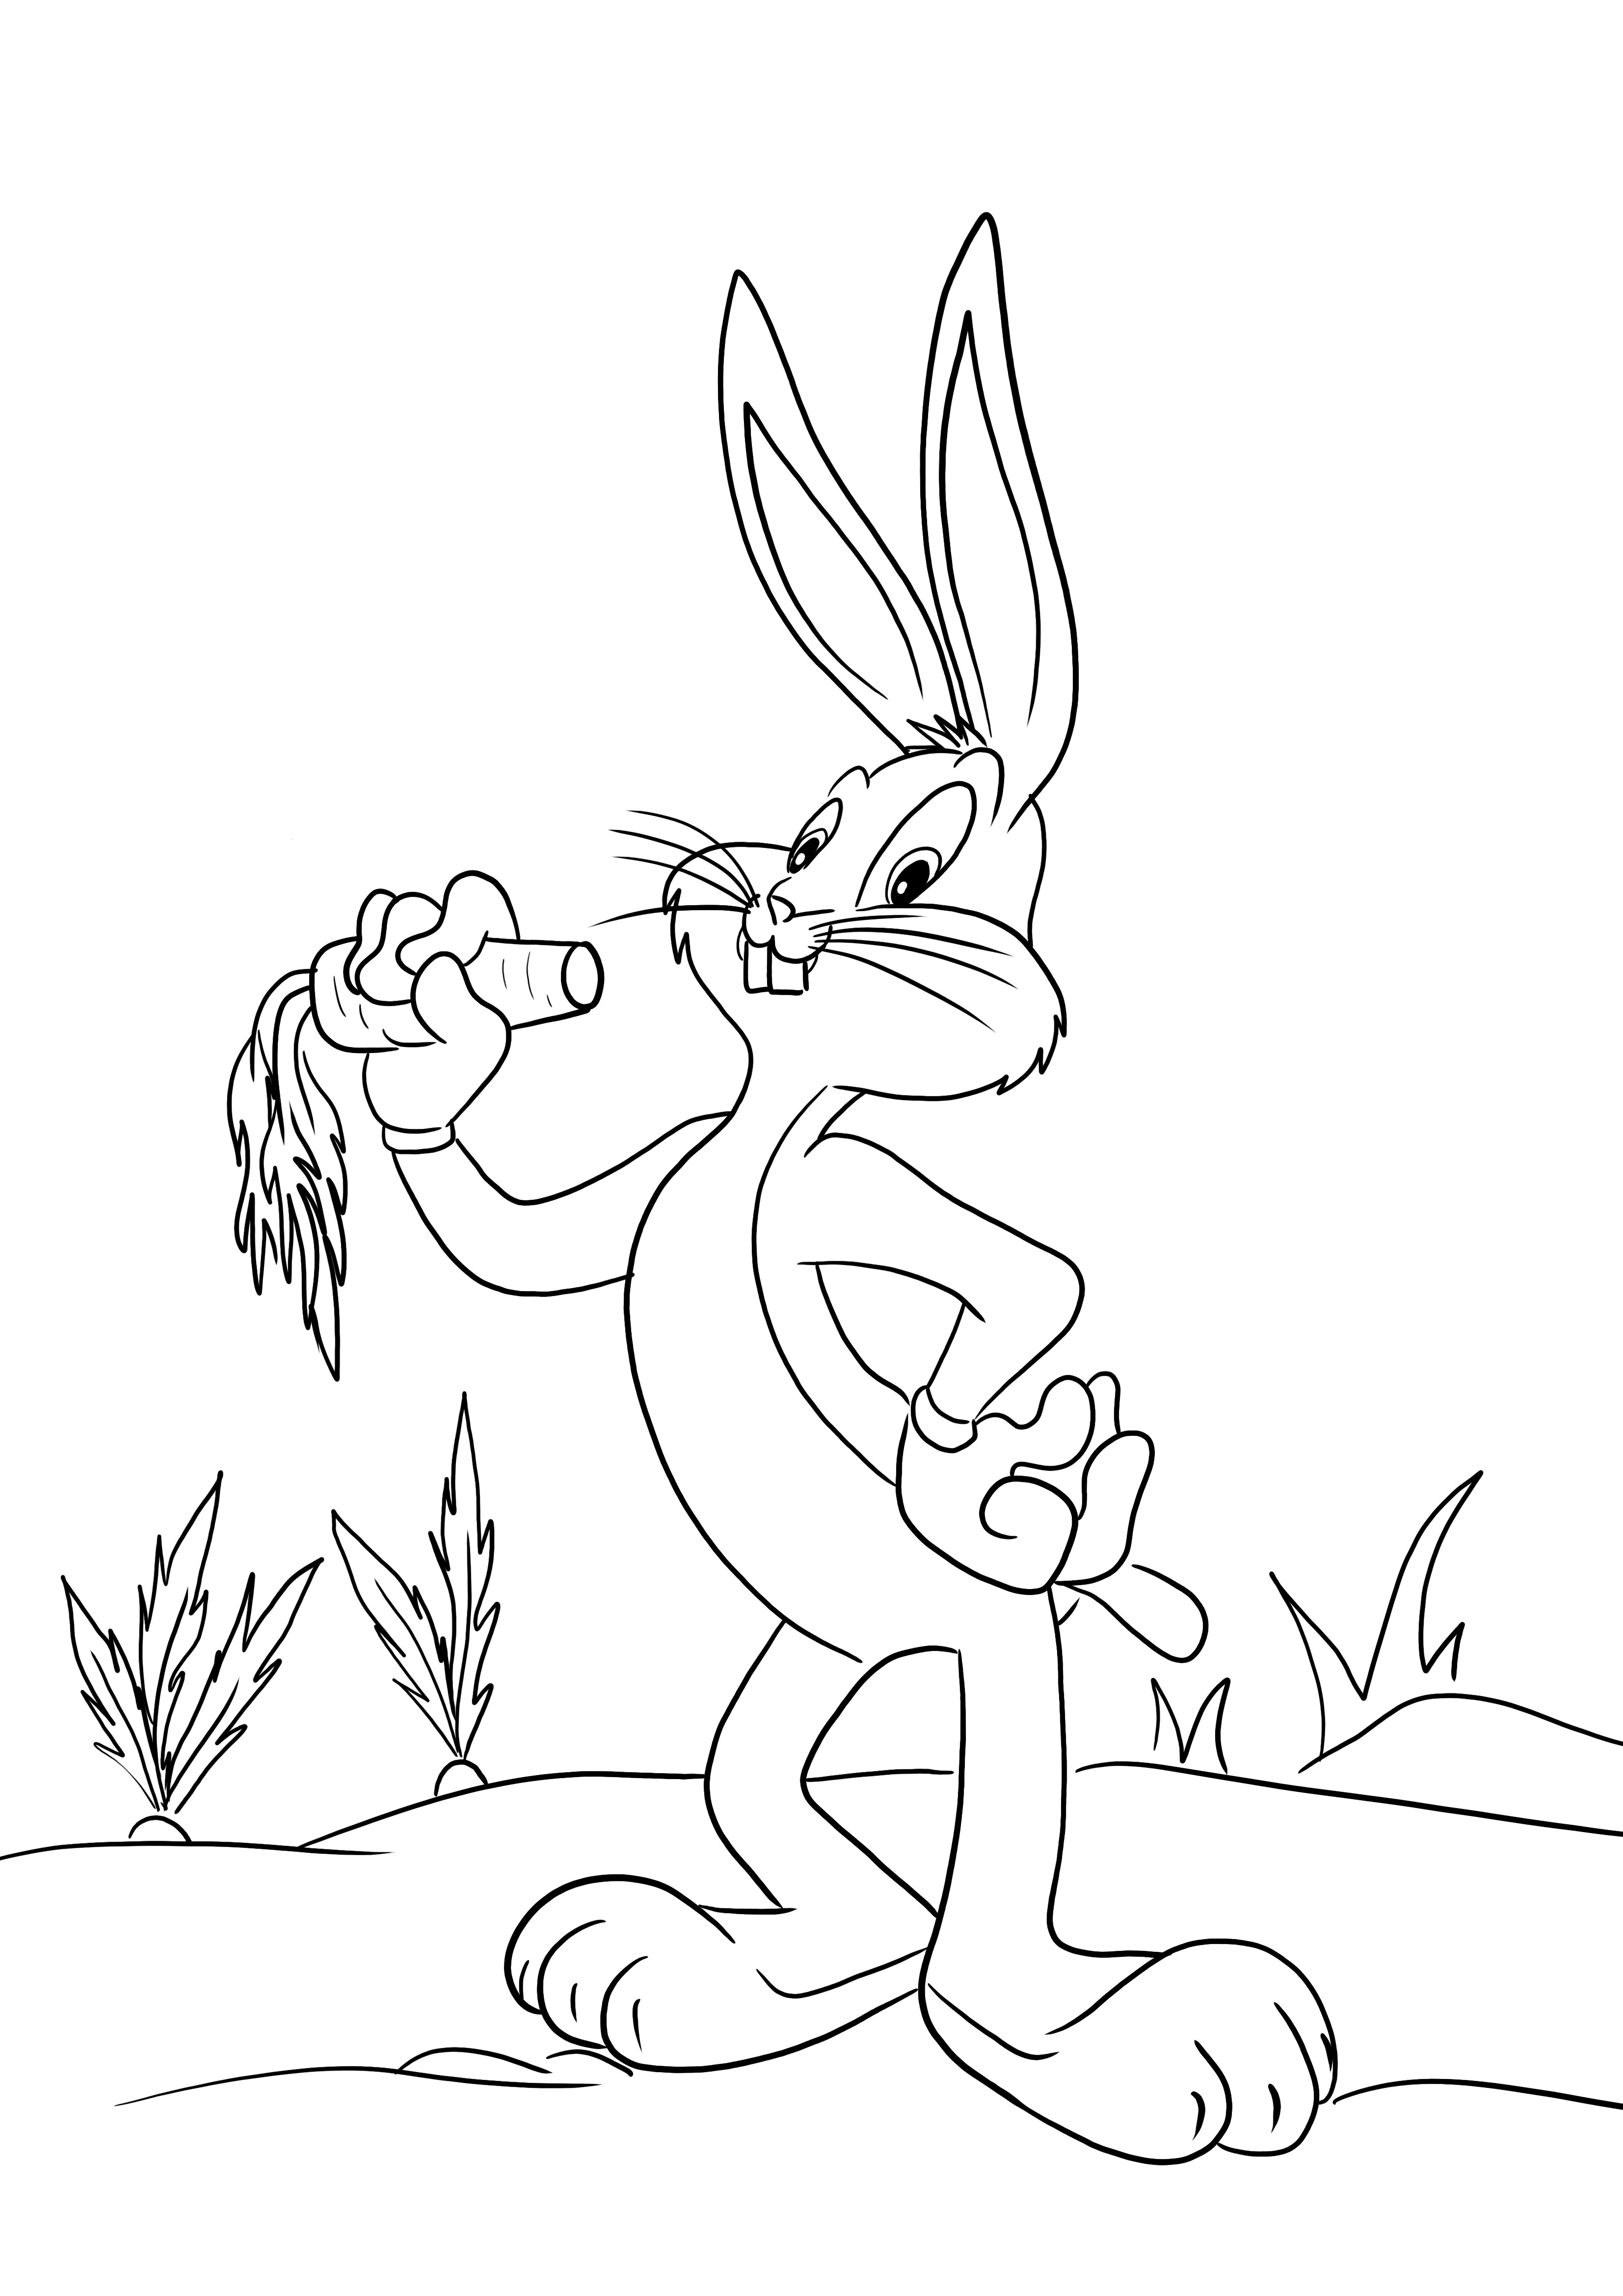 Einfaches Ausmalbild von Bugs Bunny für Kinder zum Ausmalen und Spaß haben